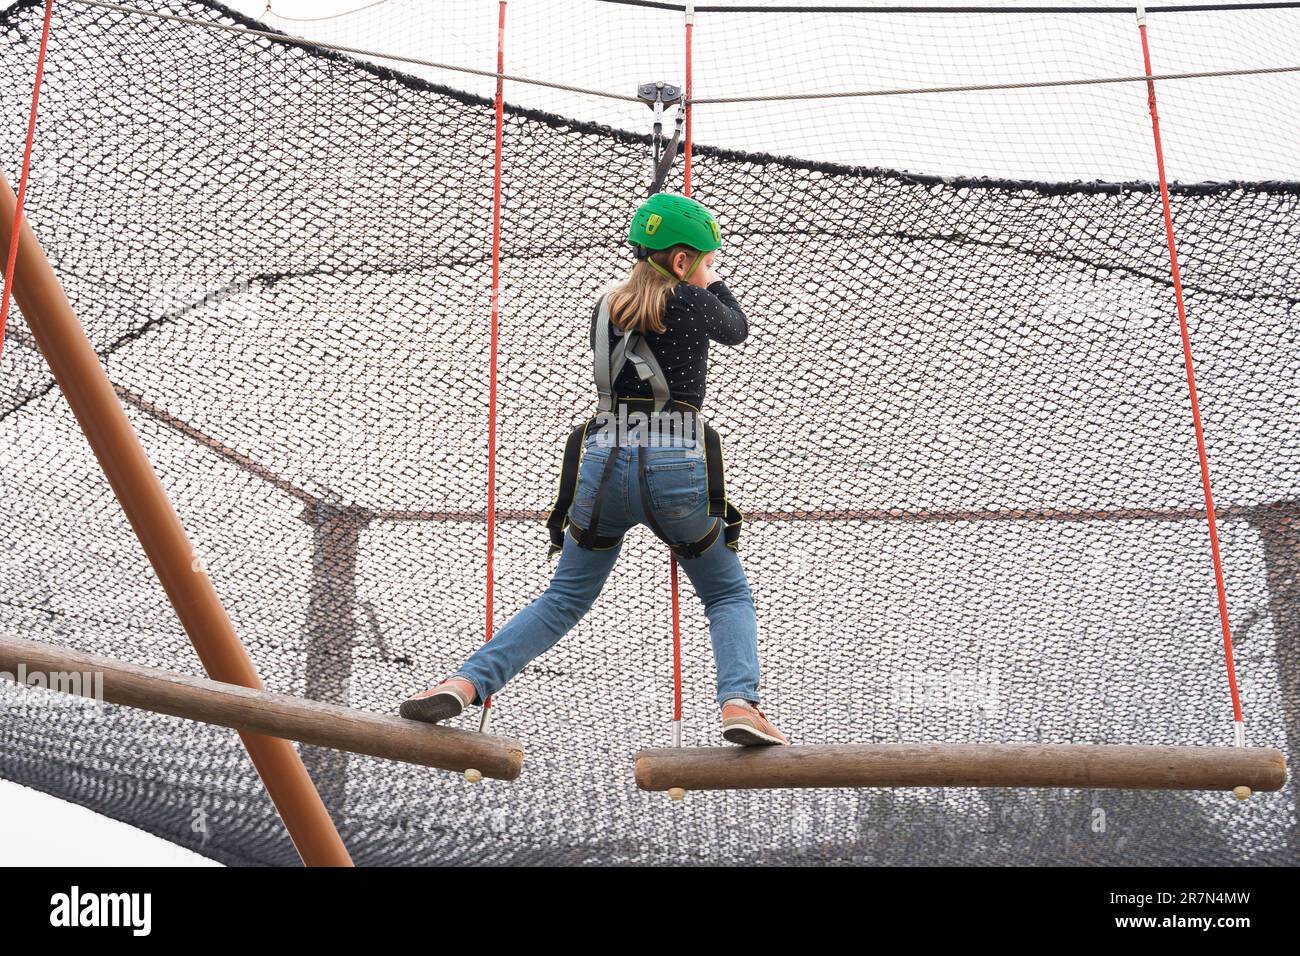 Teenager-Mädchen mit Klettergeschirr-Ausrüstung, grüner Sport-Schutzhelm. Seilpark. Befestigung Karabiner an Sicherheitsseil. Hang Stockfoto